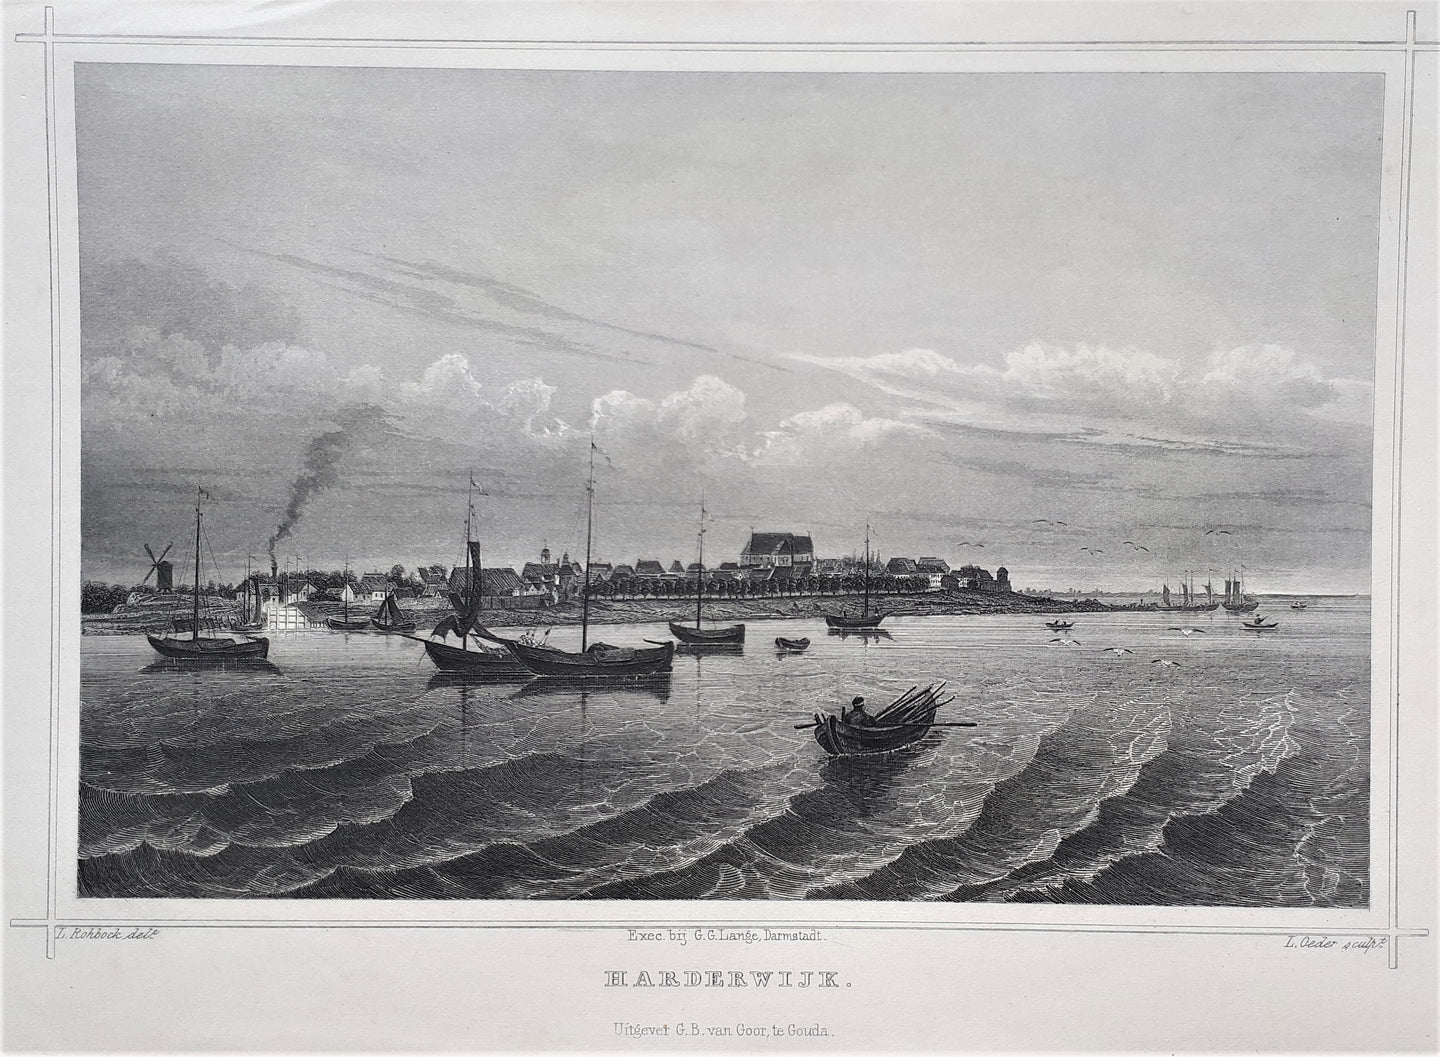 HARDERWIJK Gezicht vanaf het water - JL Terwen / GB van Goor - 1858